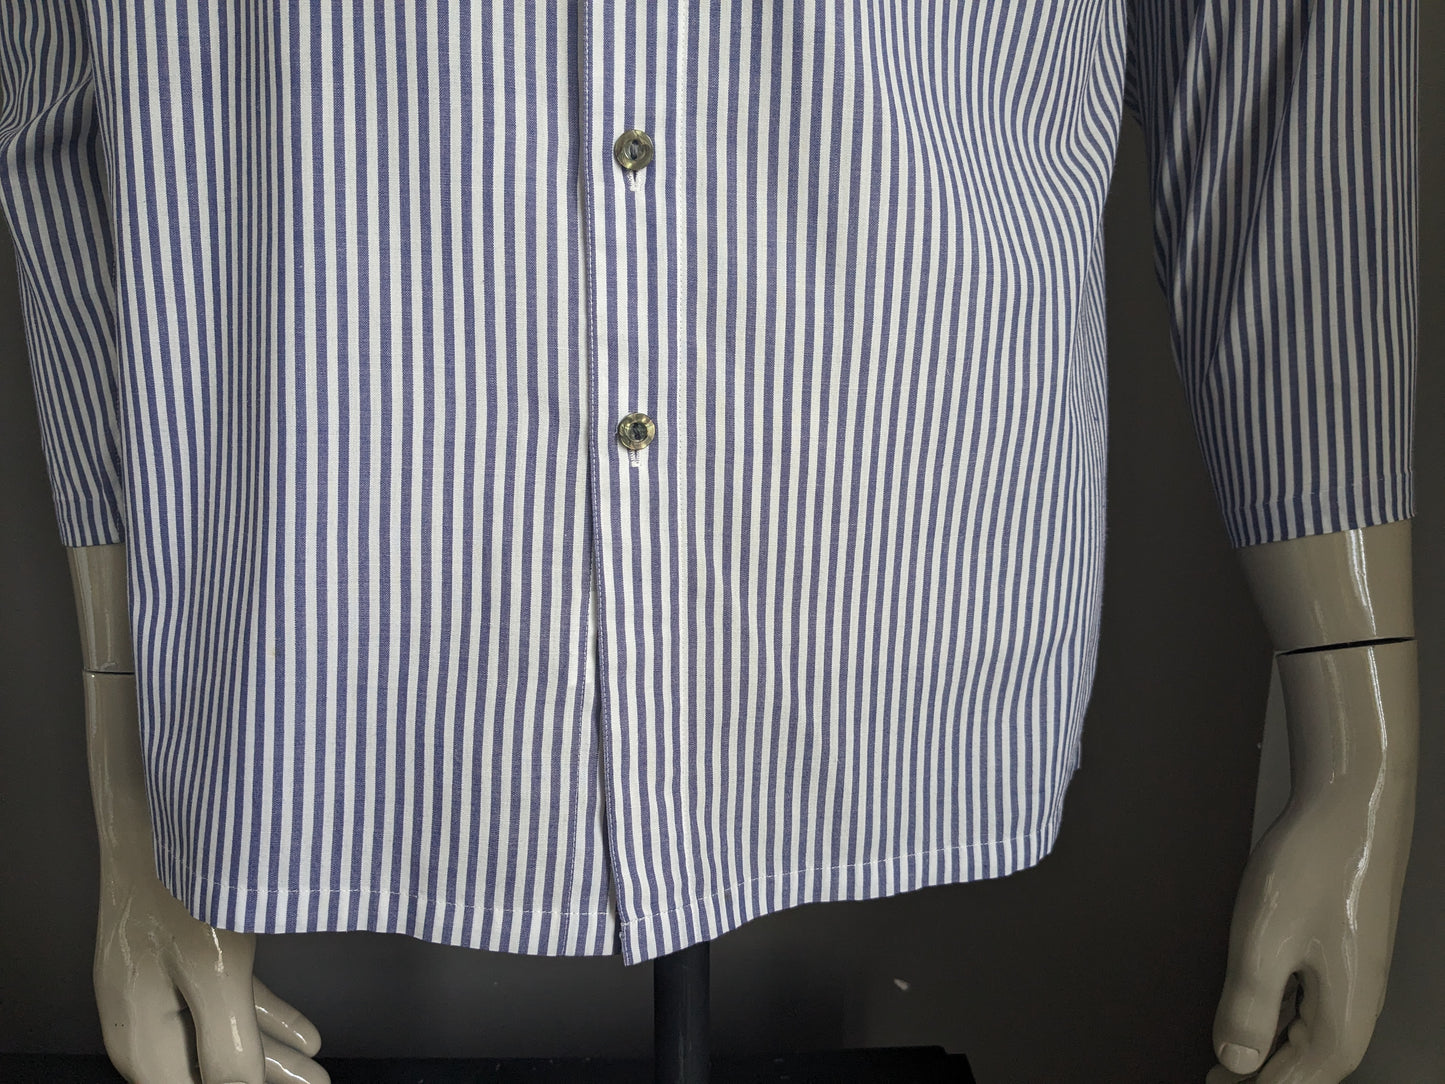 Vintage Kings Pride Shirt avec mao / agriculteurs / collier debout. Blanc bleu rayé. Taille L.